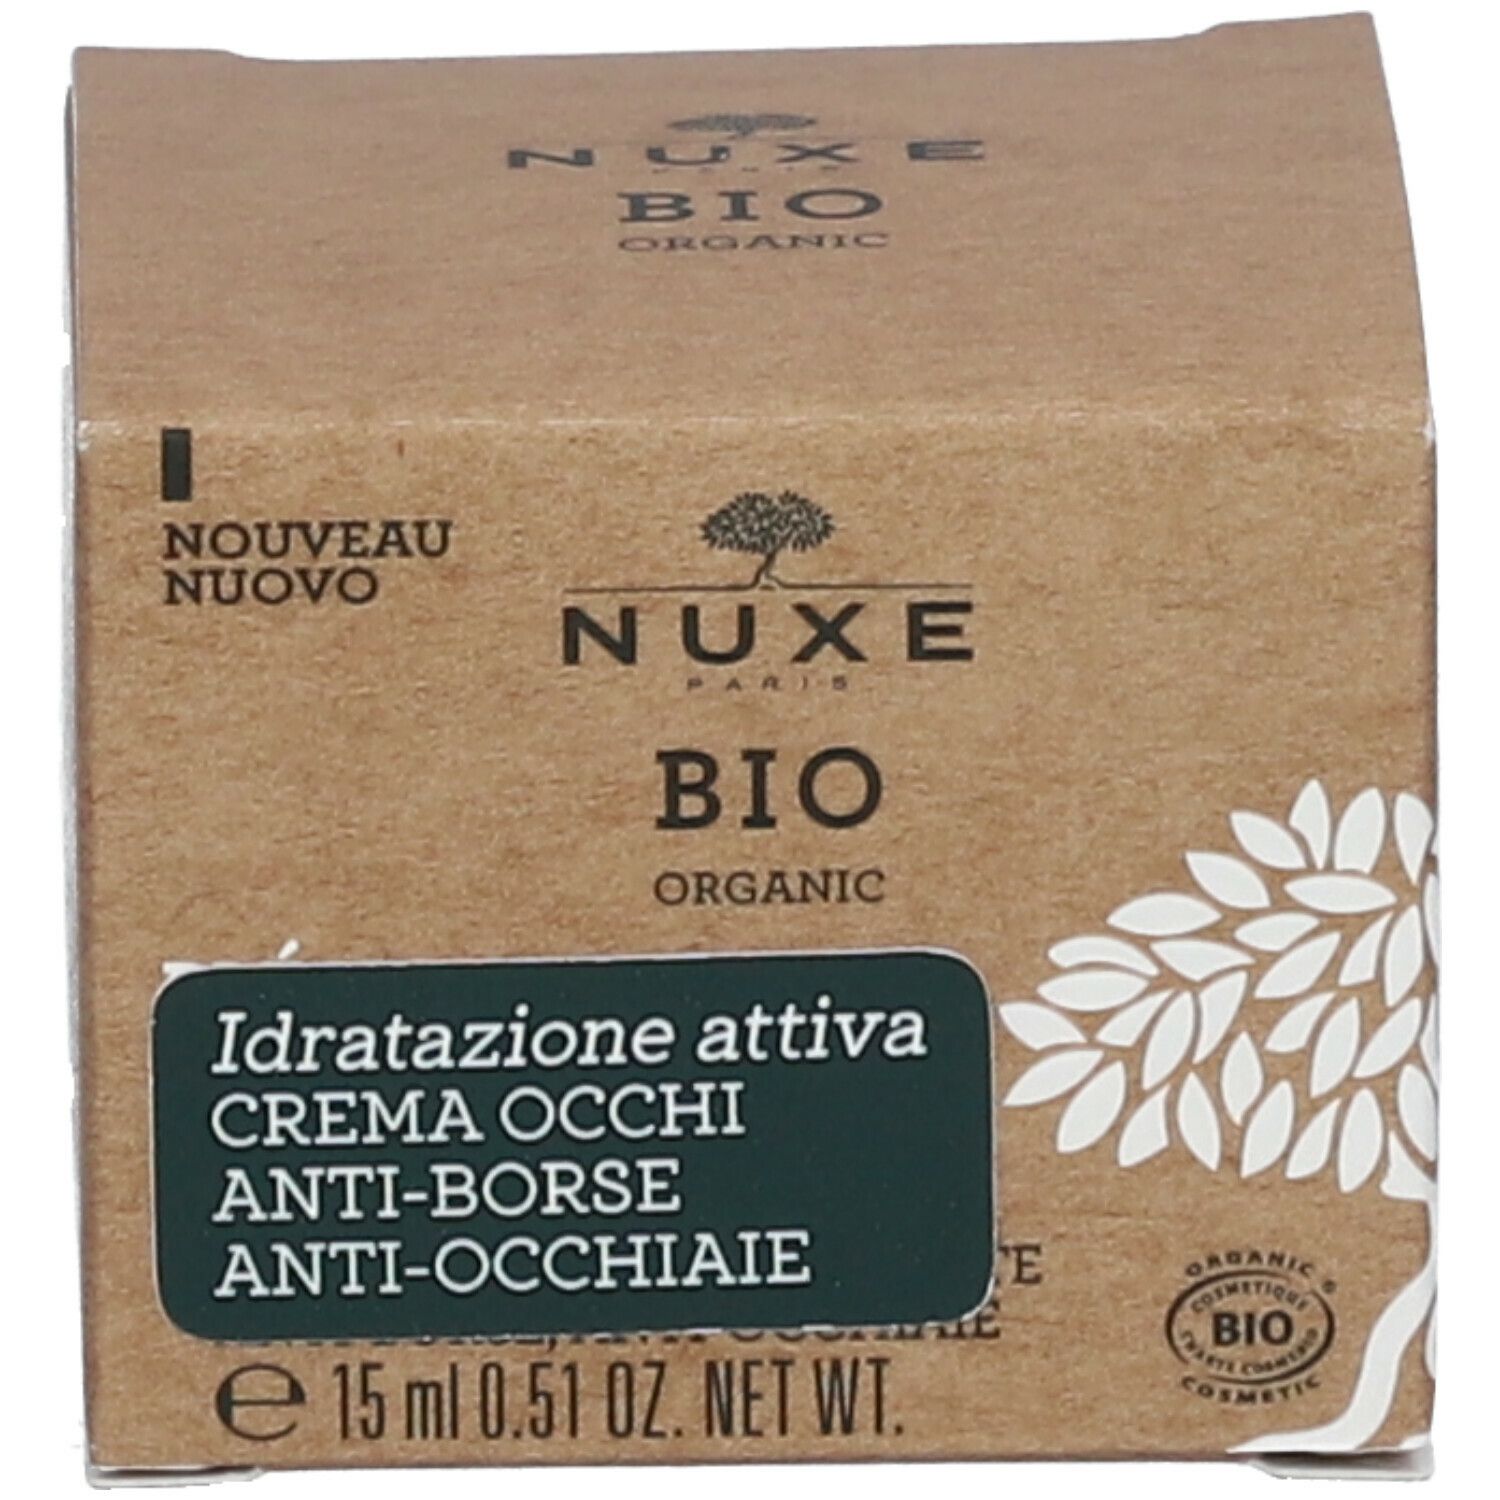 Nuxe Bio Crema Occhi Anti-Borse